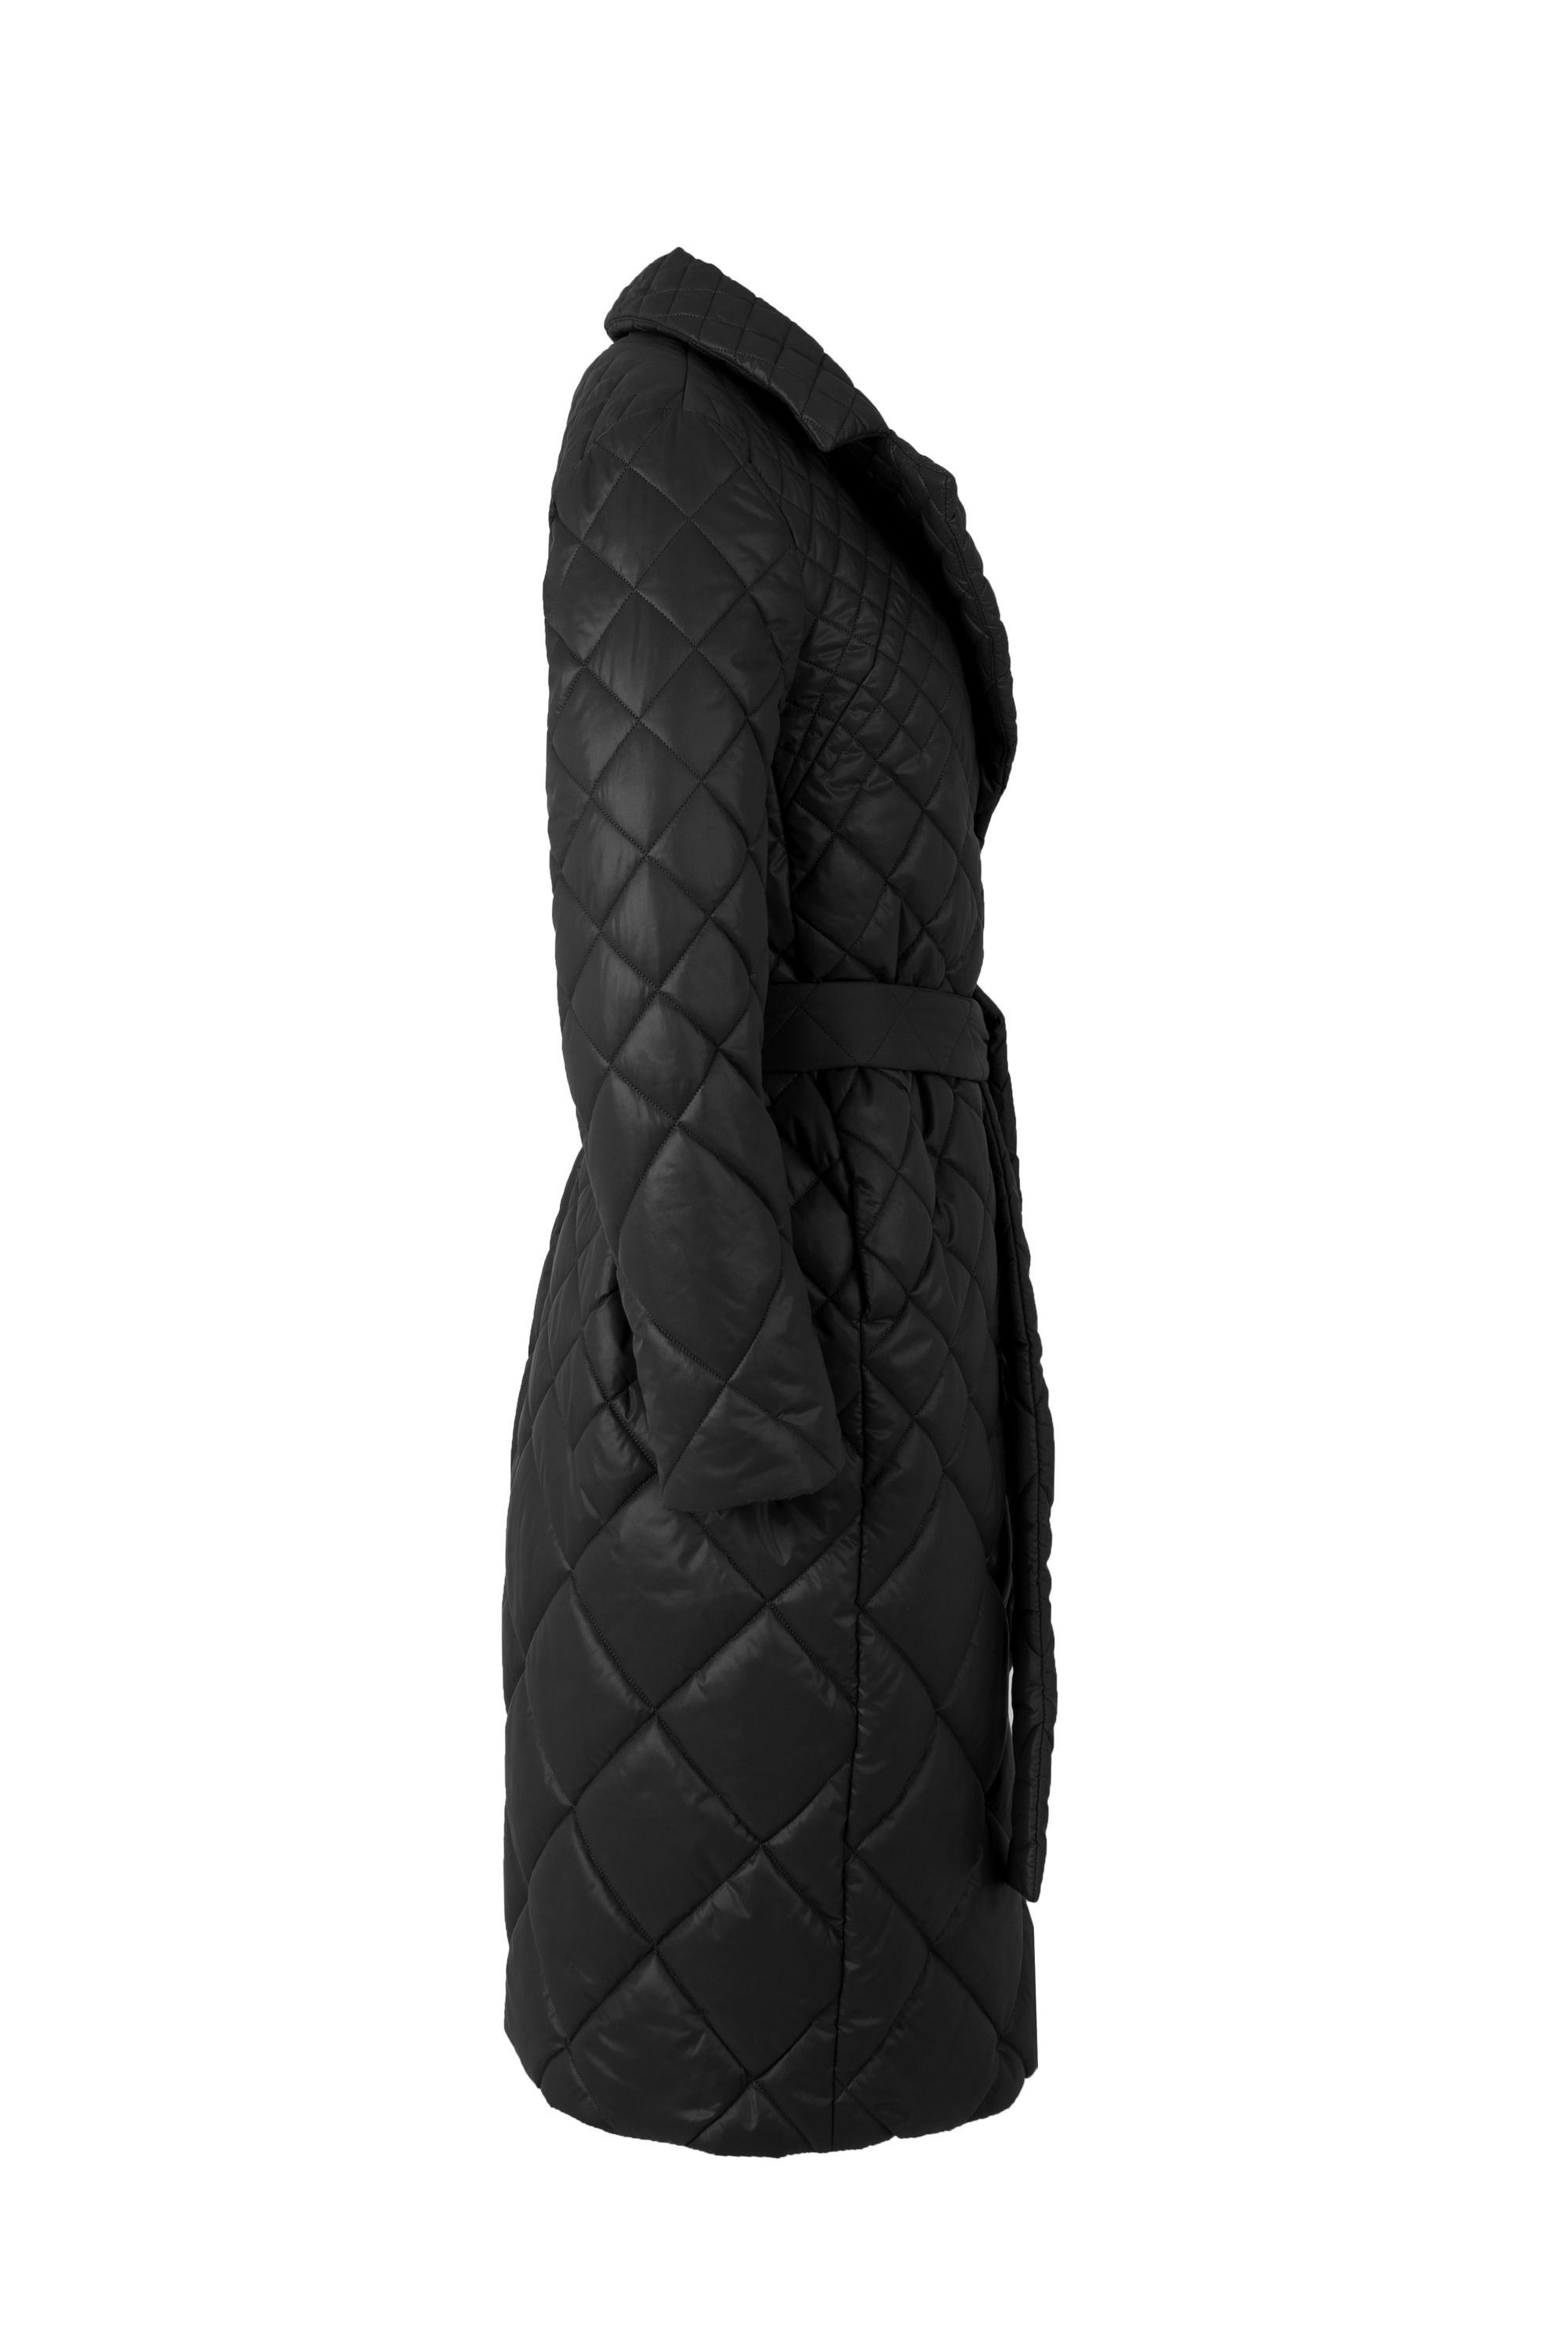 Пальто женское плащевое утепленное 5-12535-1